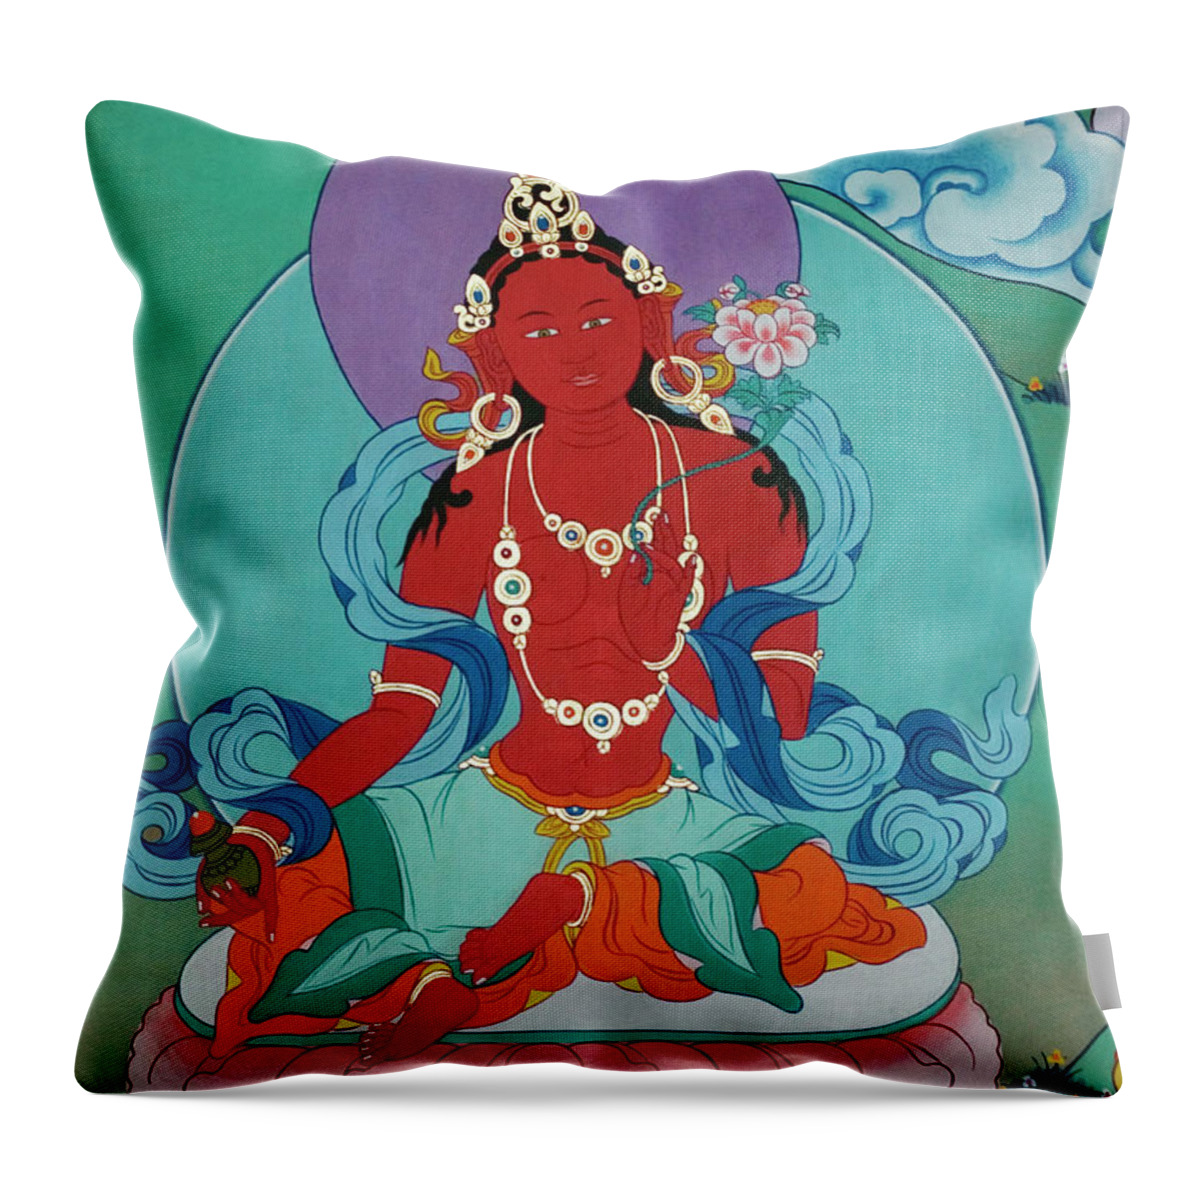 Art Throw Pillow featuring the photograph Red Tara - Kham, Eastern Tibet by Craig Lovell